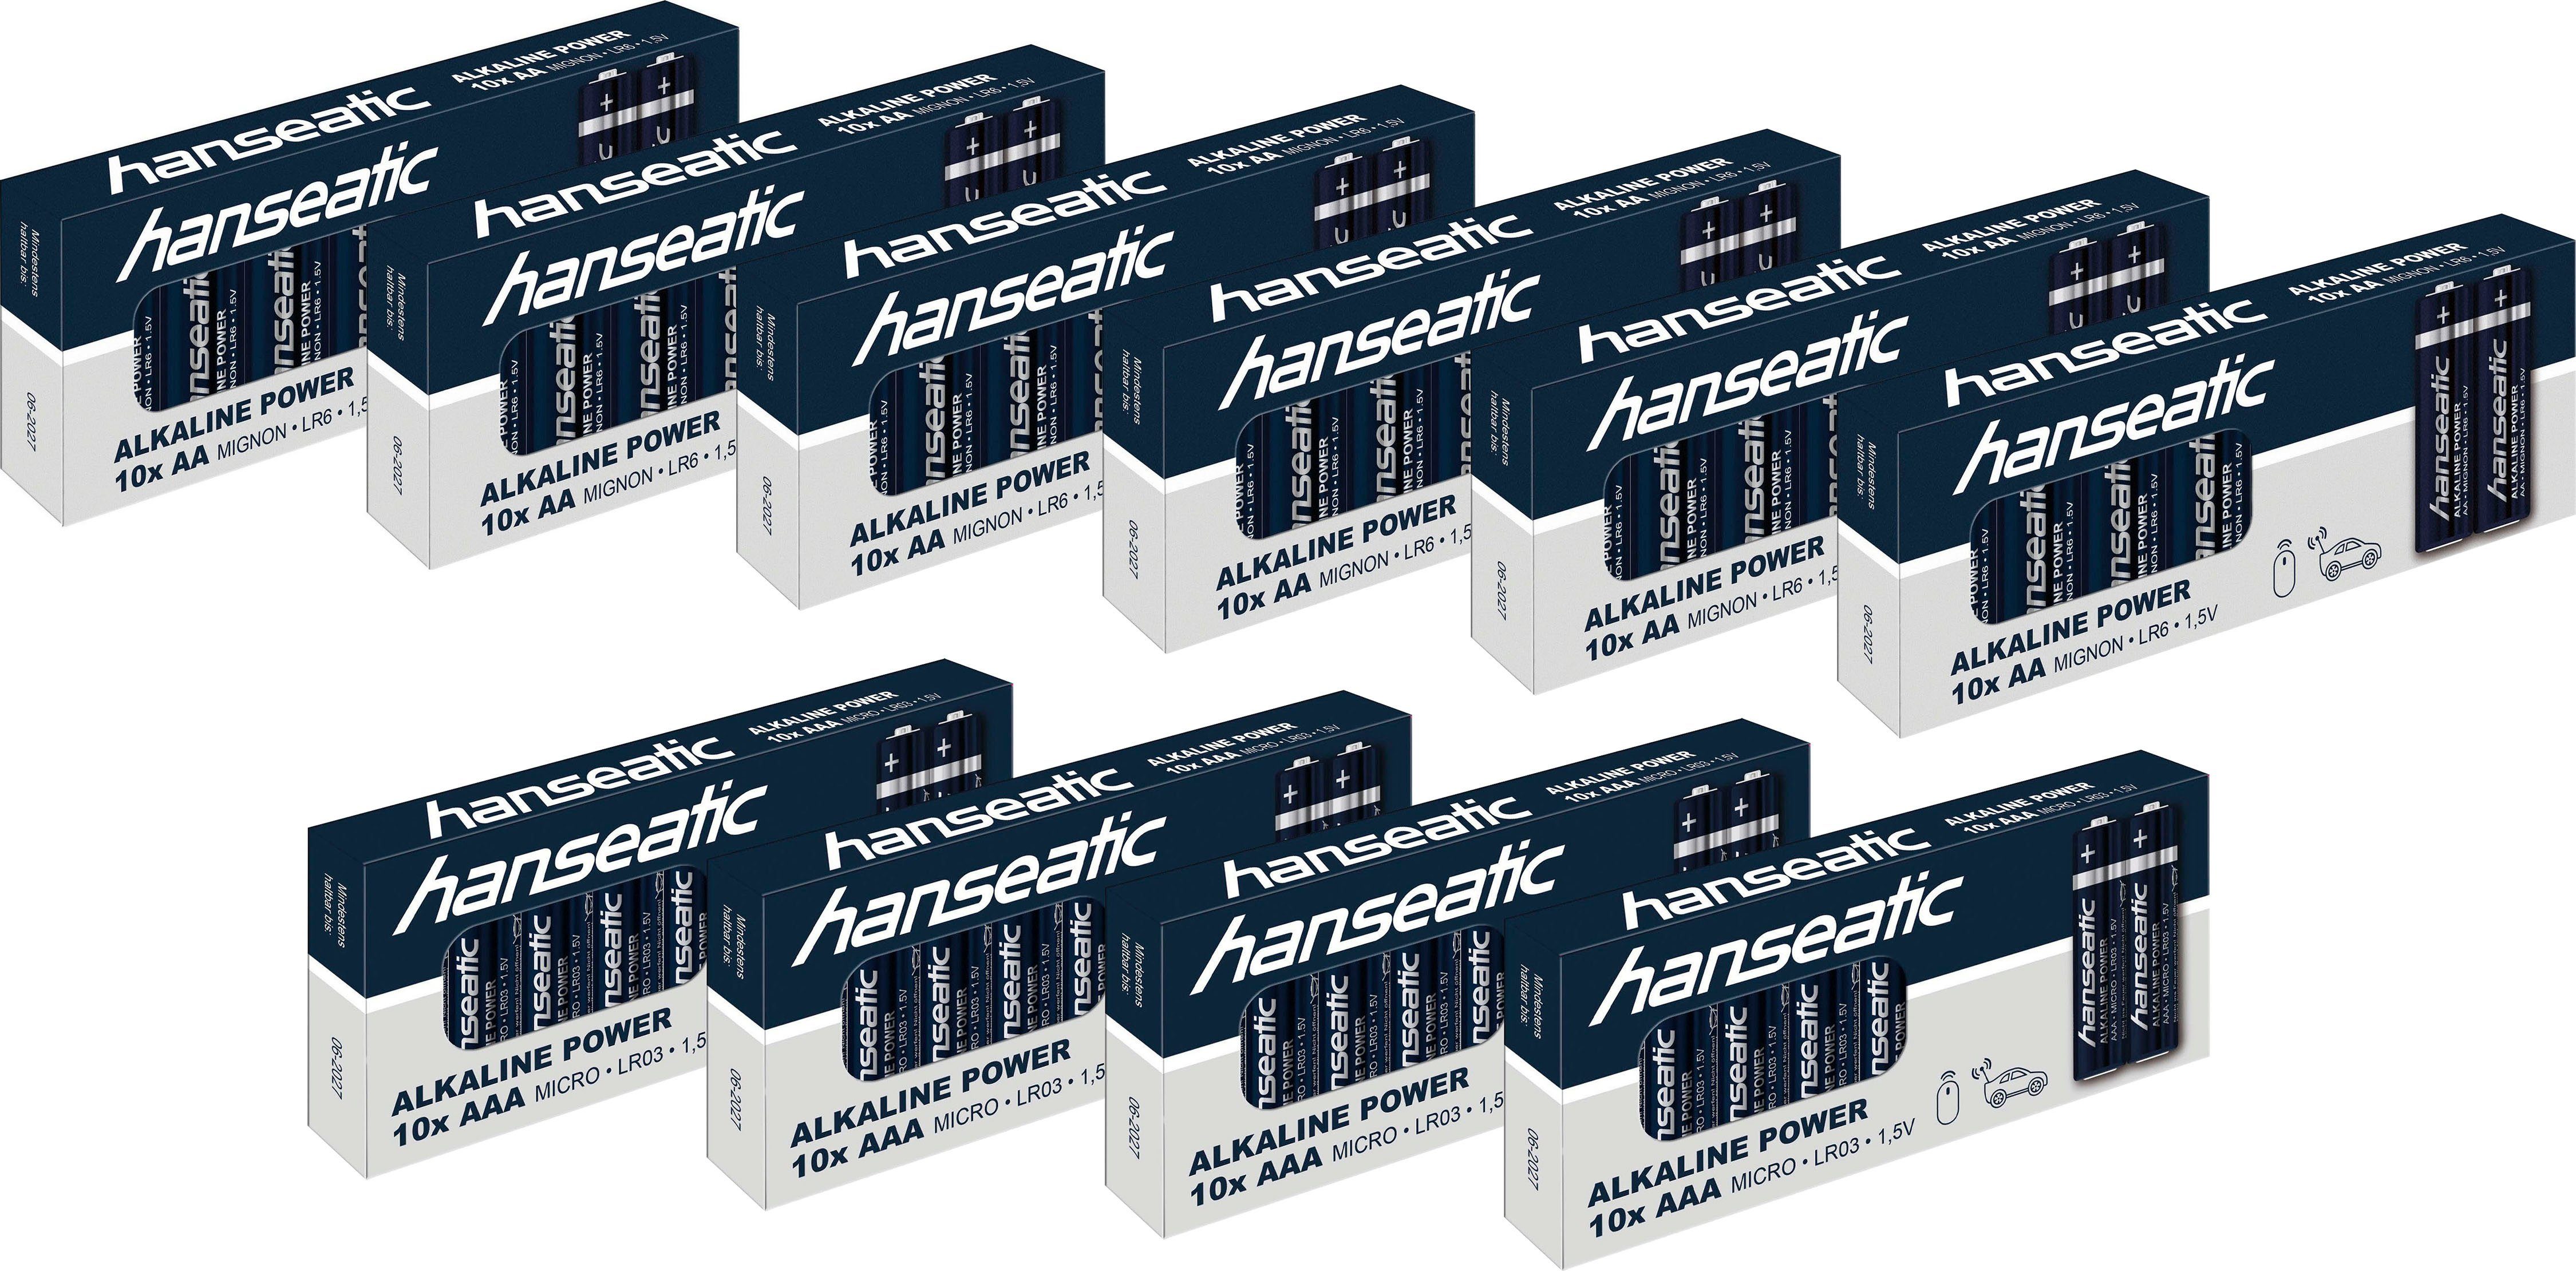 Hanseatic Batterie Set 60 + 40 Batterie Stück